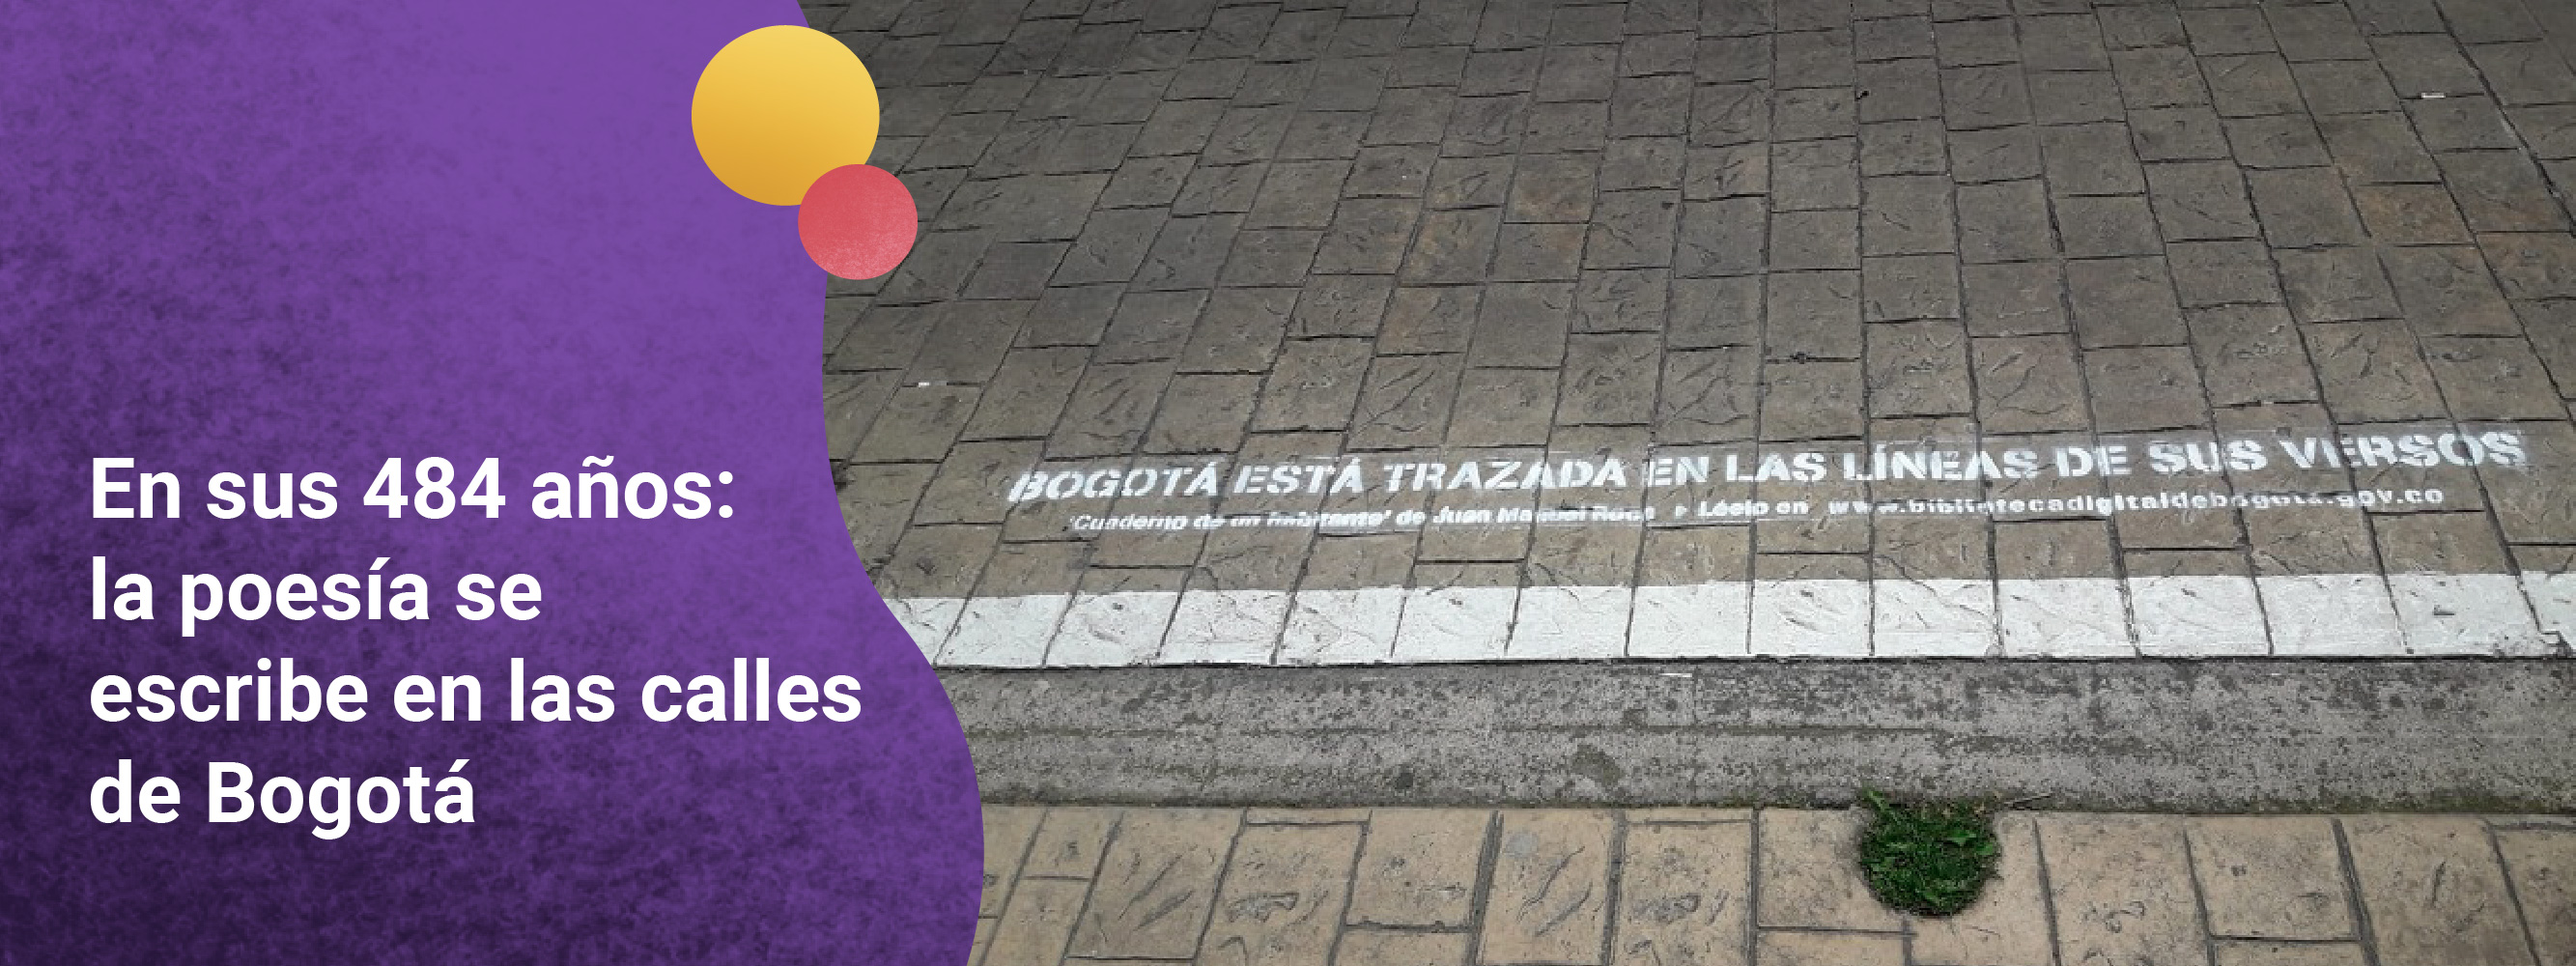 En sus 484 años: la poesía se escribe en las calles de Bogotá